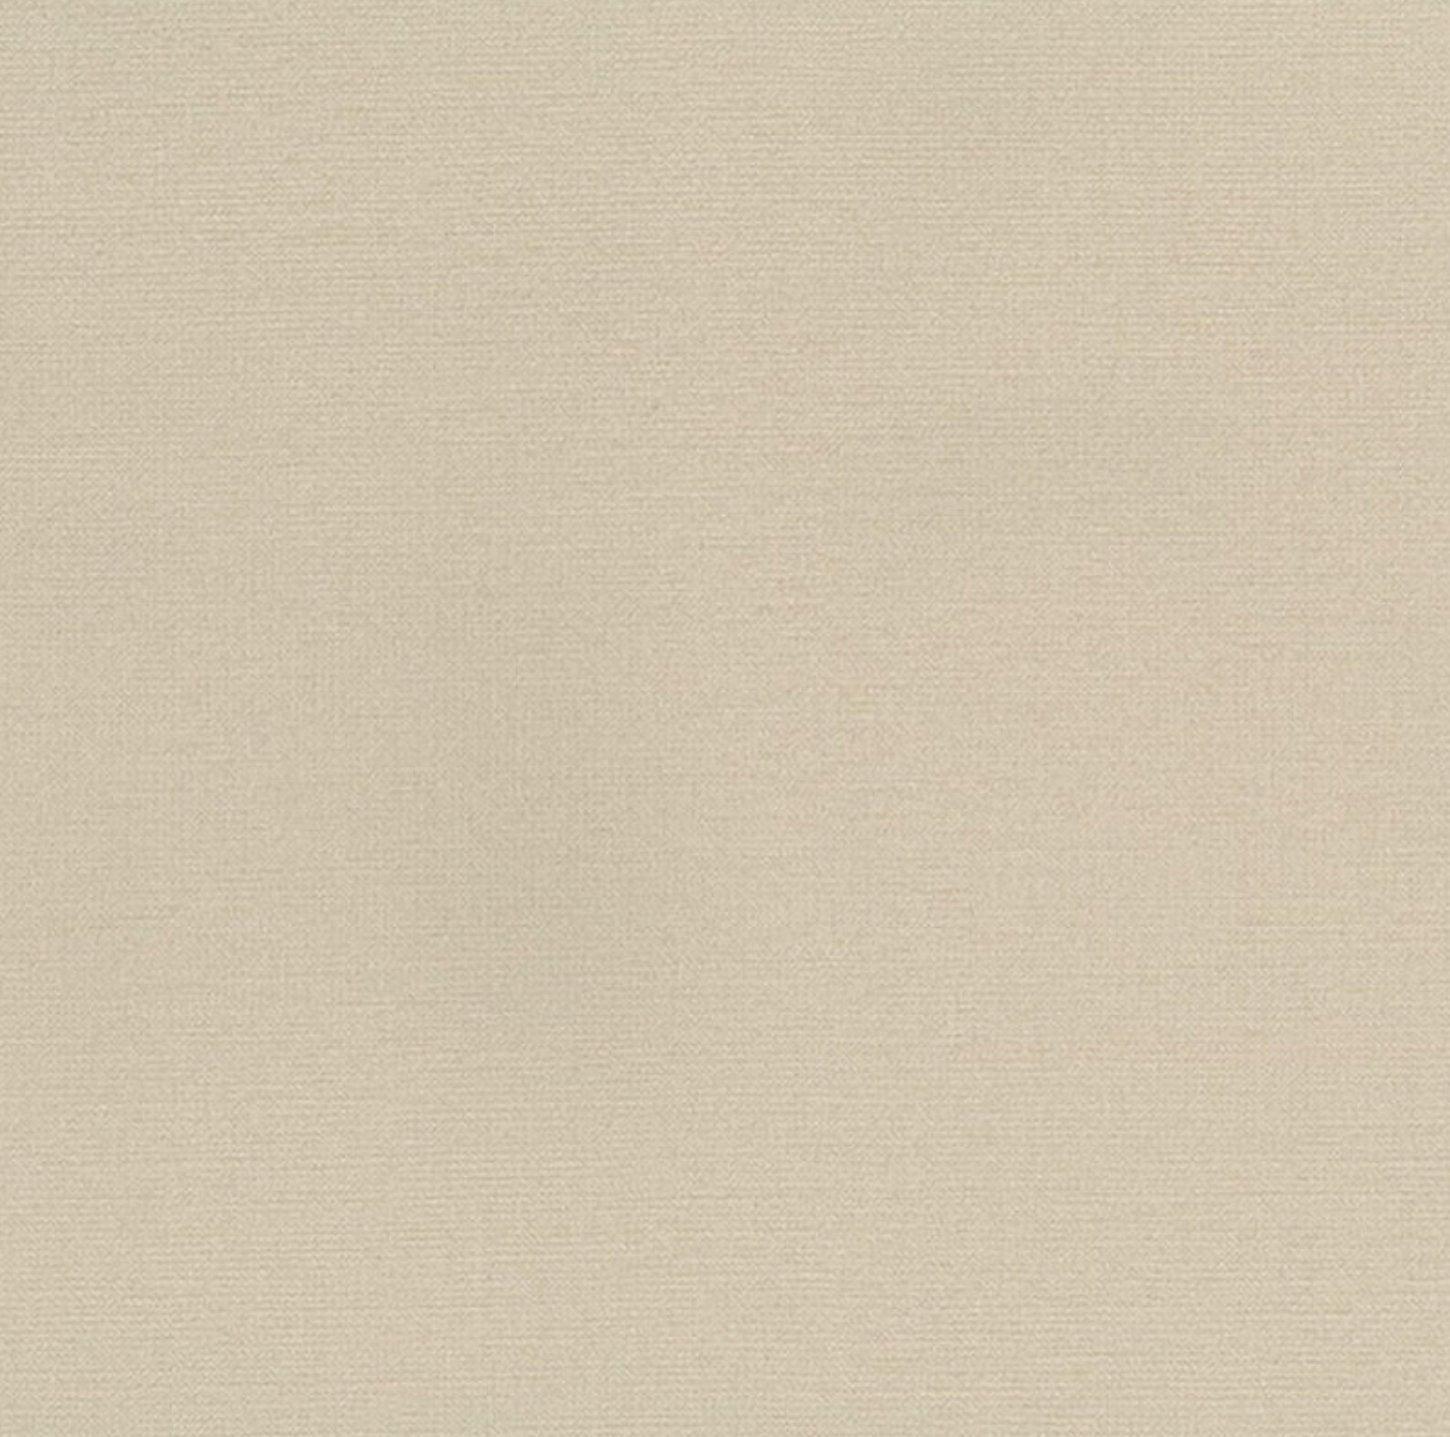 1450x1437 Hình nền kết cấu giả mạo màu be trung tính, Tường nam tính tự nhiên nhạt màu nâu, Nhìn bằng vải lanh dệt, Trang trại tối giản